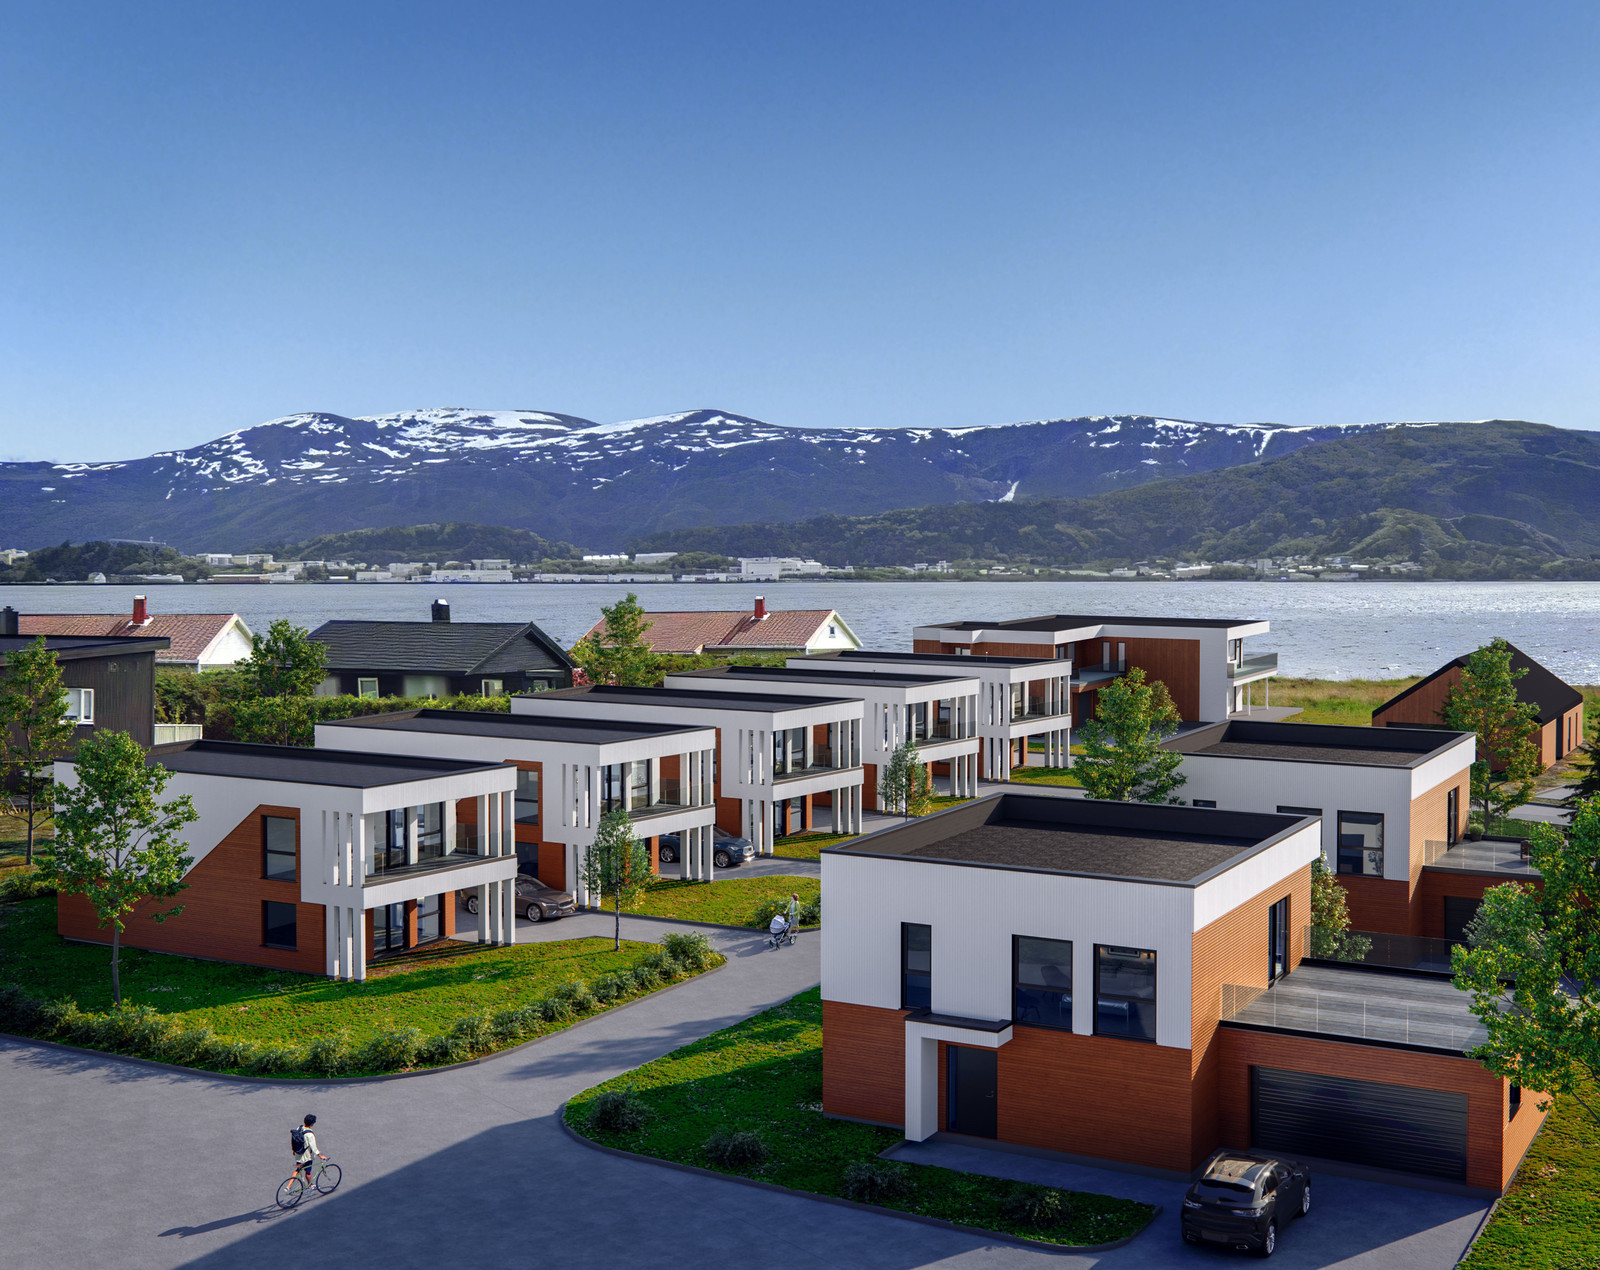 Fokus Bygg AS  har gleden av å presentere dette flotte prosjektet planlagt bygd på Valderøya - vakre Johansmarka. Dette er et populært prosjekt med nydelig beliggenhet. Ta kontakt for mer informasjon. NB bildet er kun en illustrasjon.